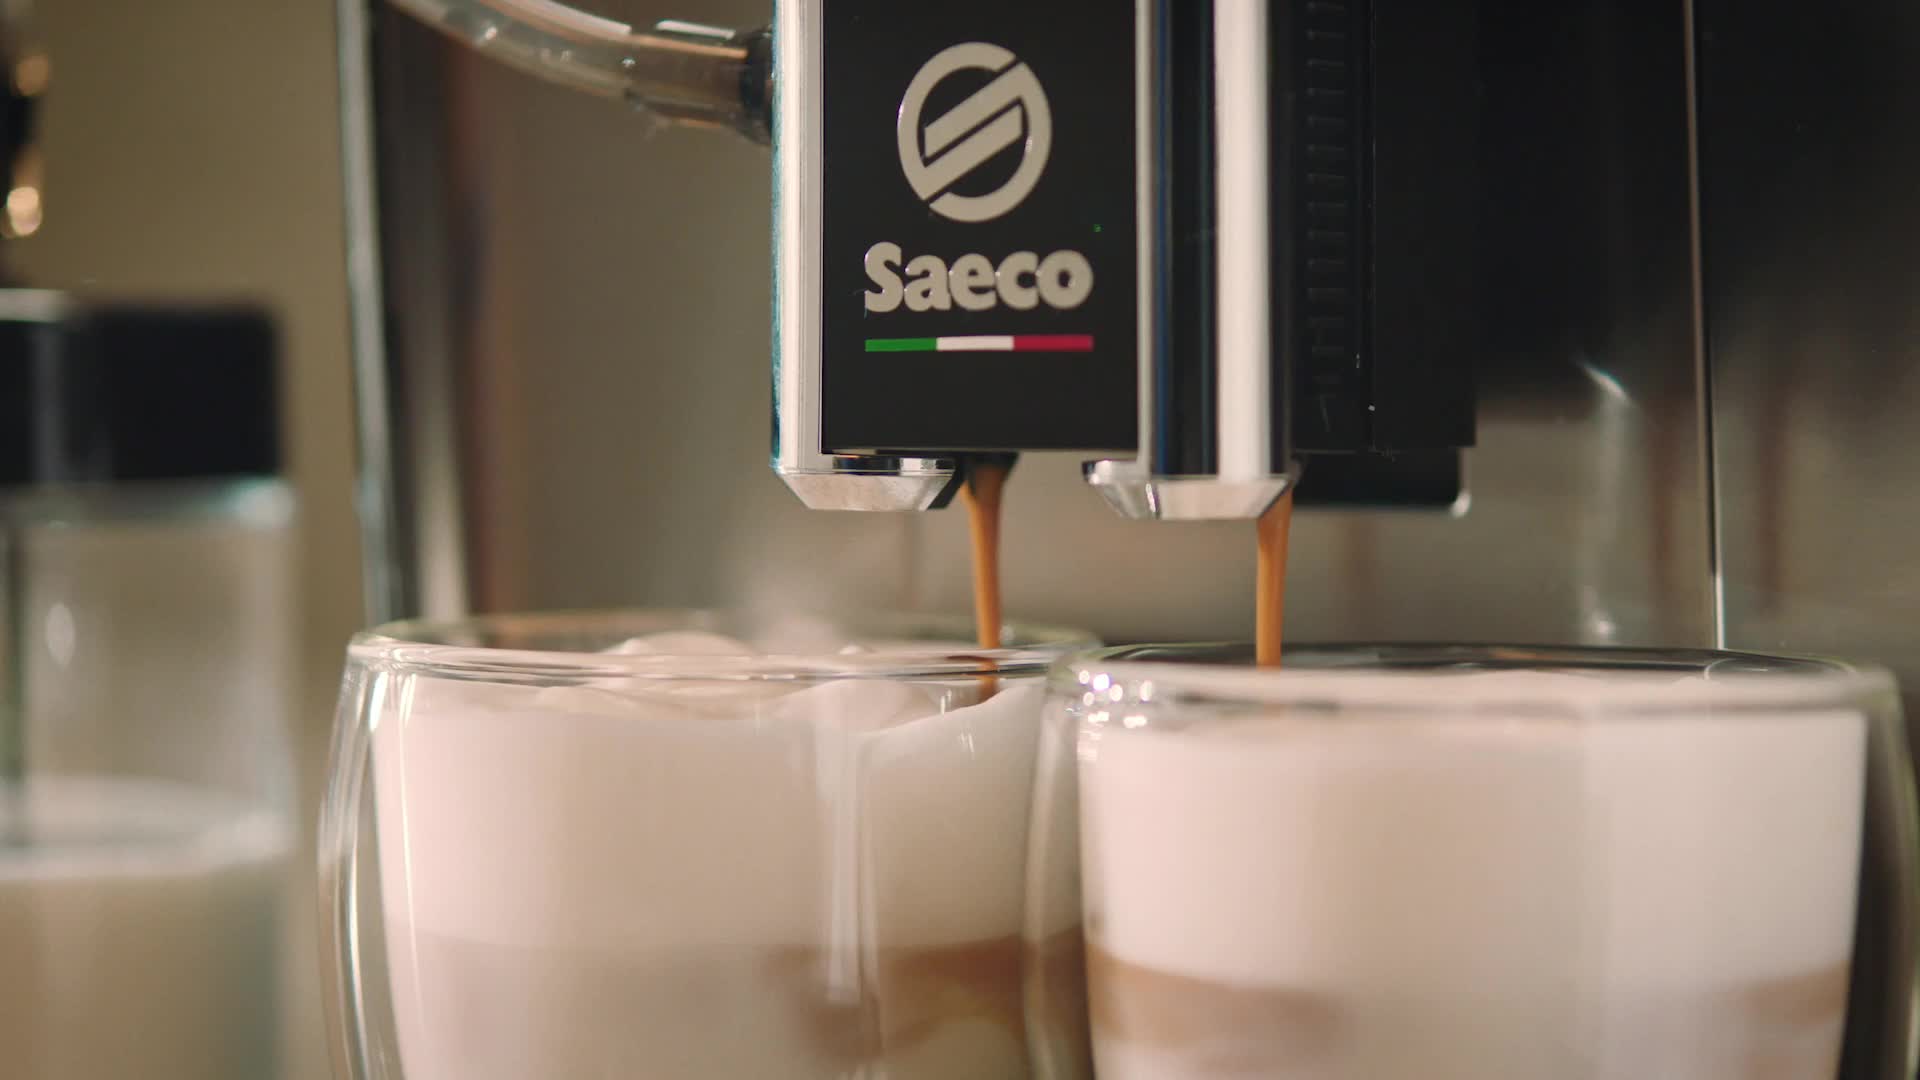 Cafetera Espresso Superautomática Stratos. Saeco